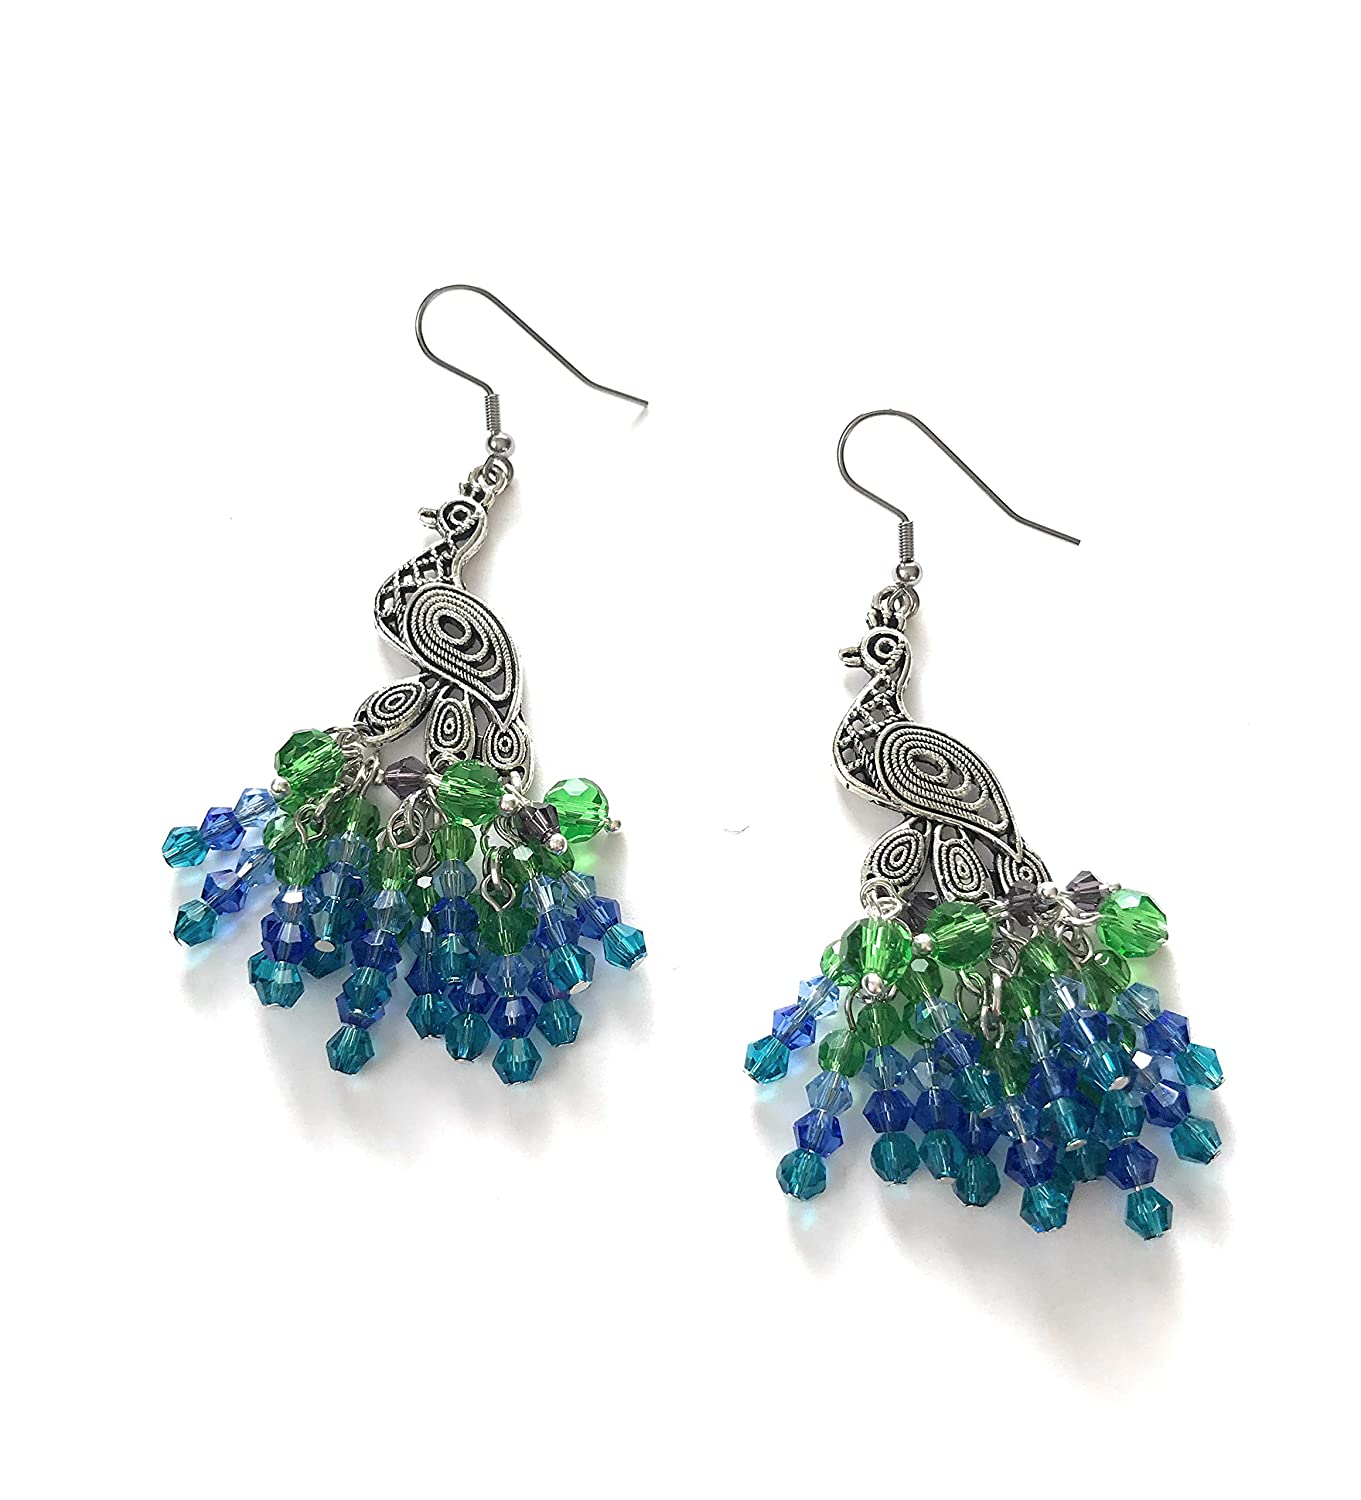 Peacock Chandelier Earrings at Scott D Jewelry Designs